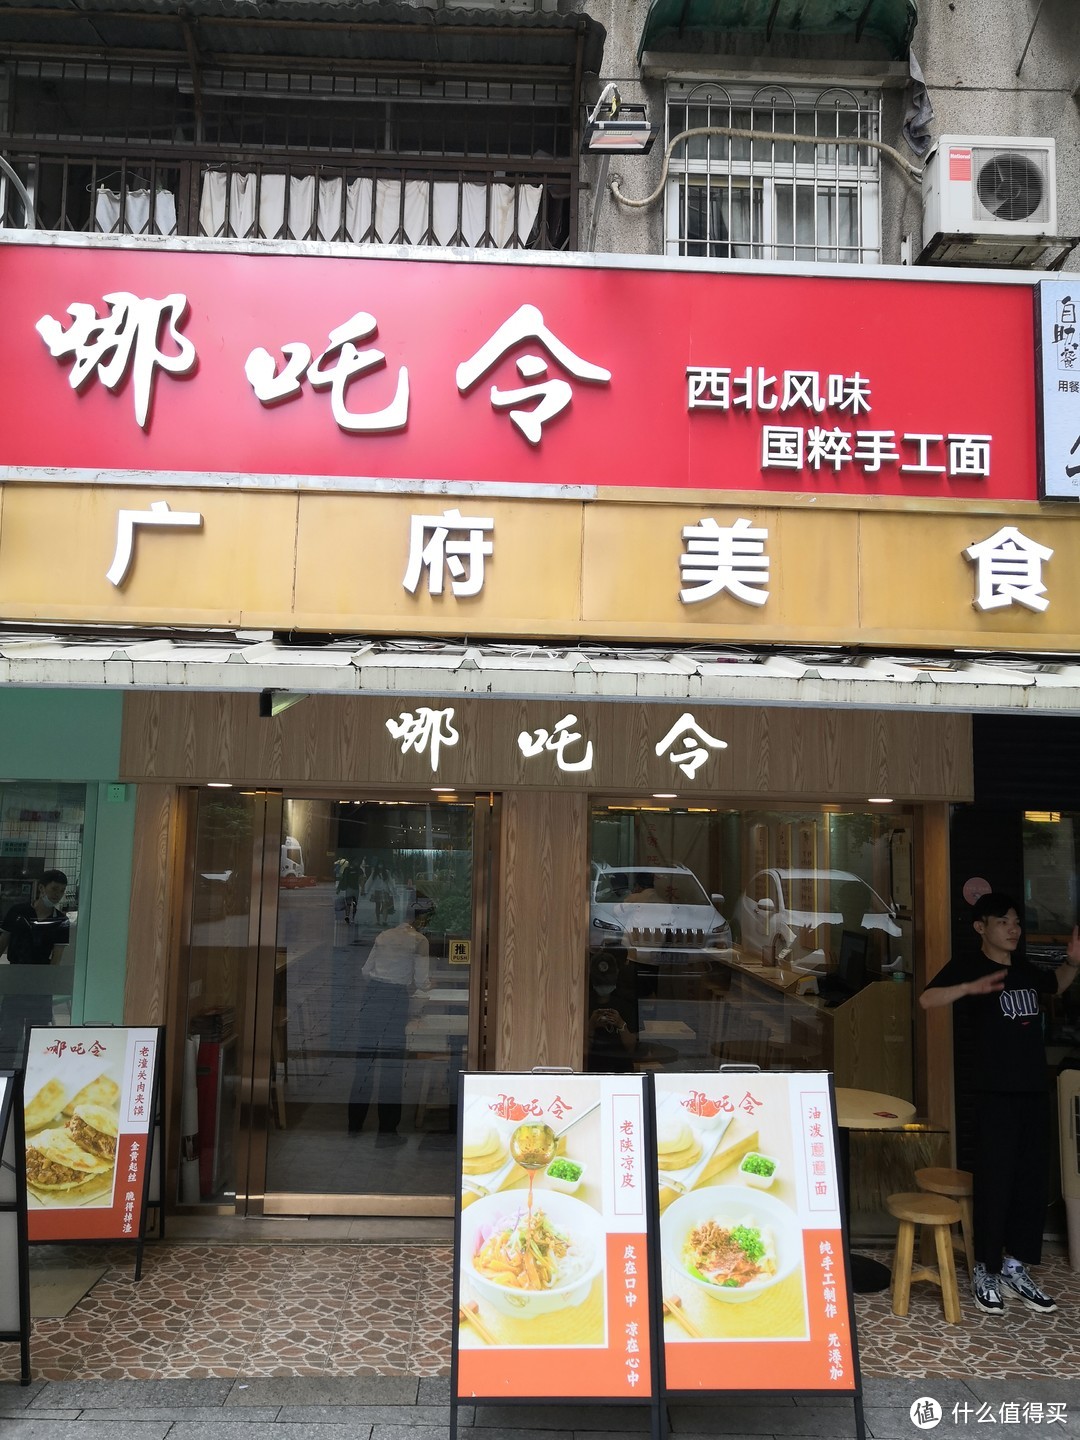 广州北京路隐藏角落的西北面食小店，肉夹馍、油泼面，满头大汗酣畅淋漓的陕味